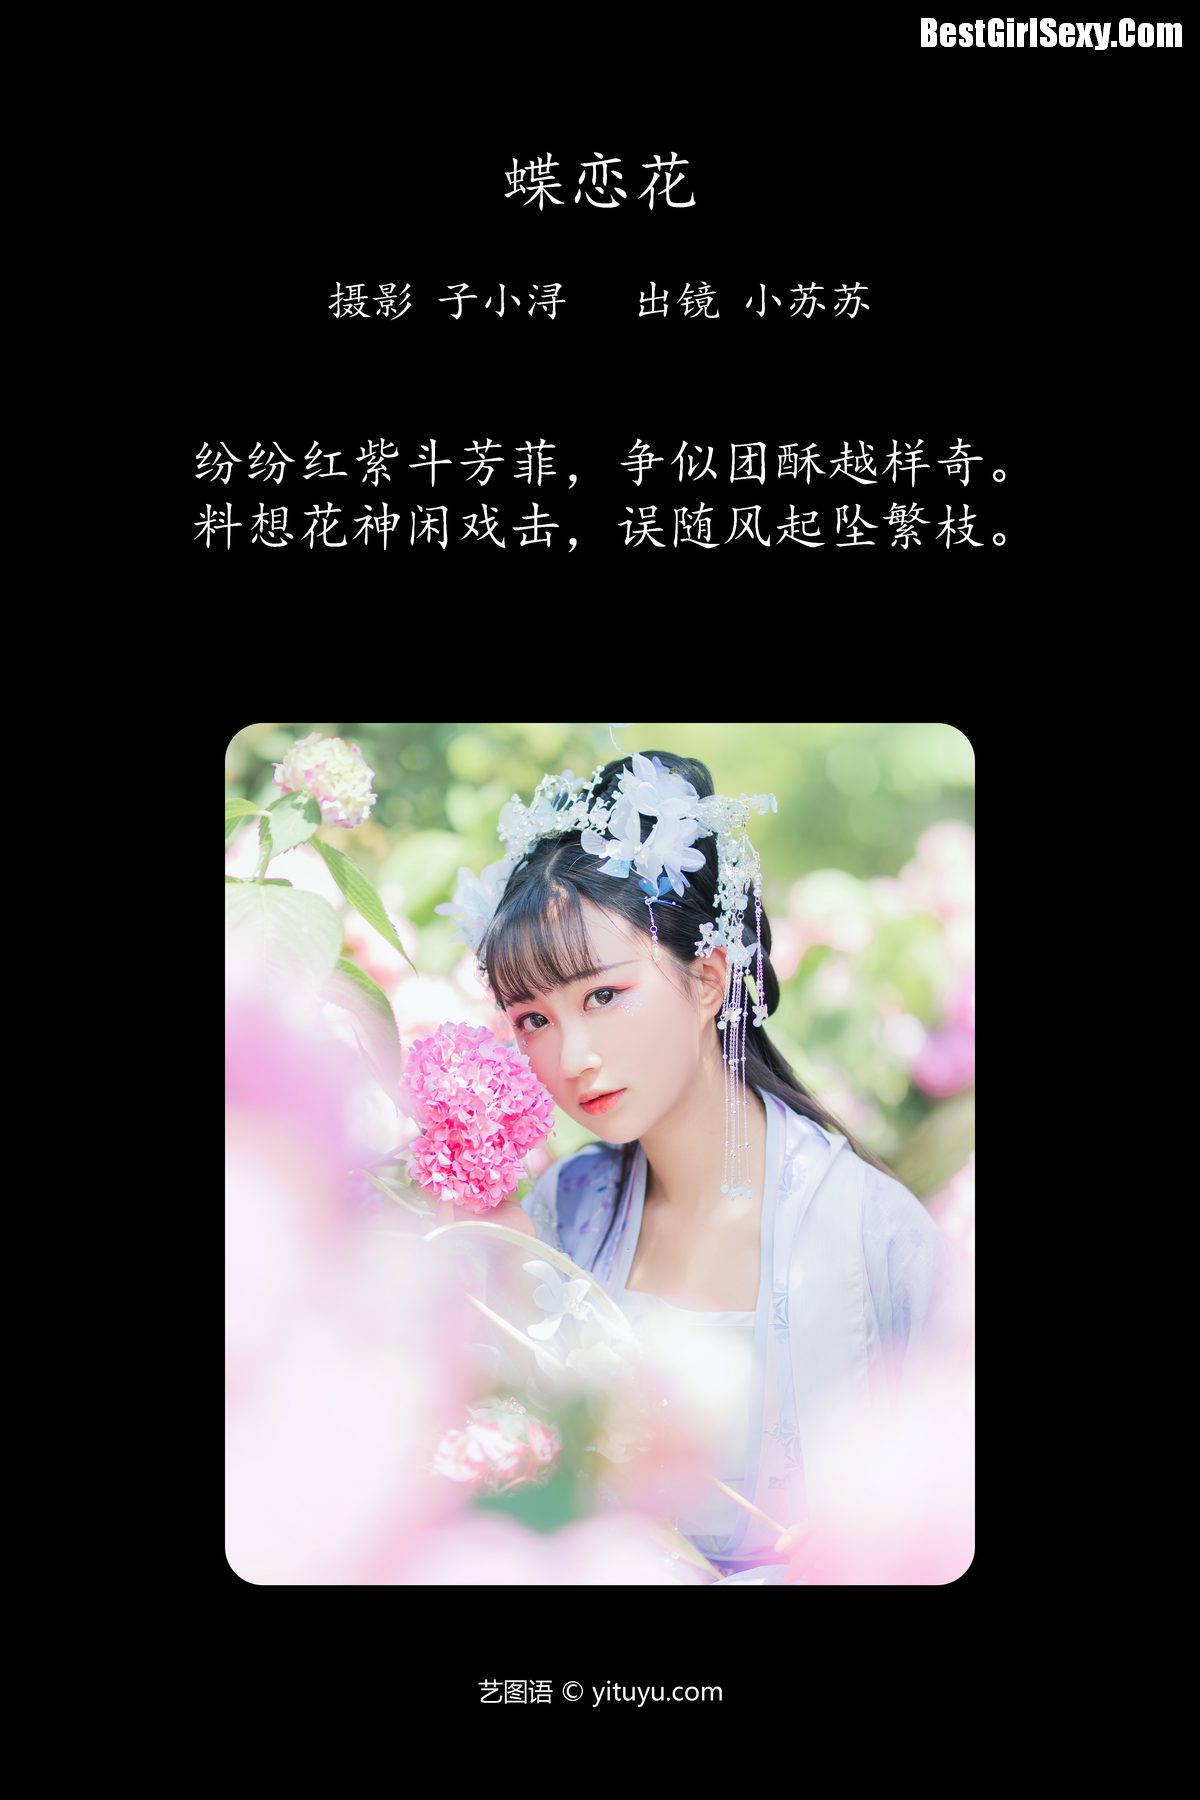 YiTuYu艺图语 Vol 4085 Qi Luo Sheng De Xiao Su Su 0001 1494611150.jpg